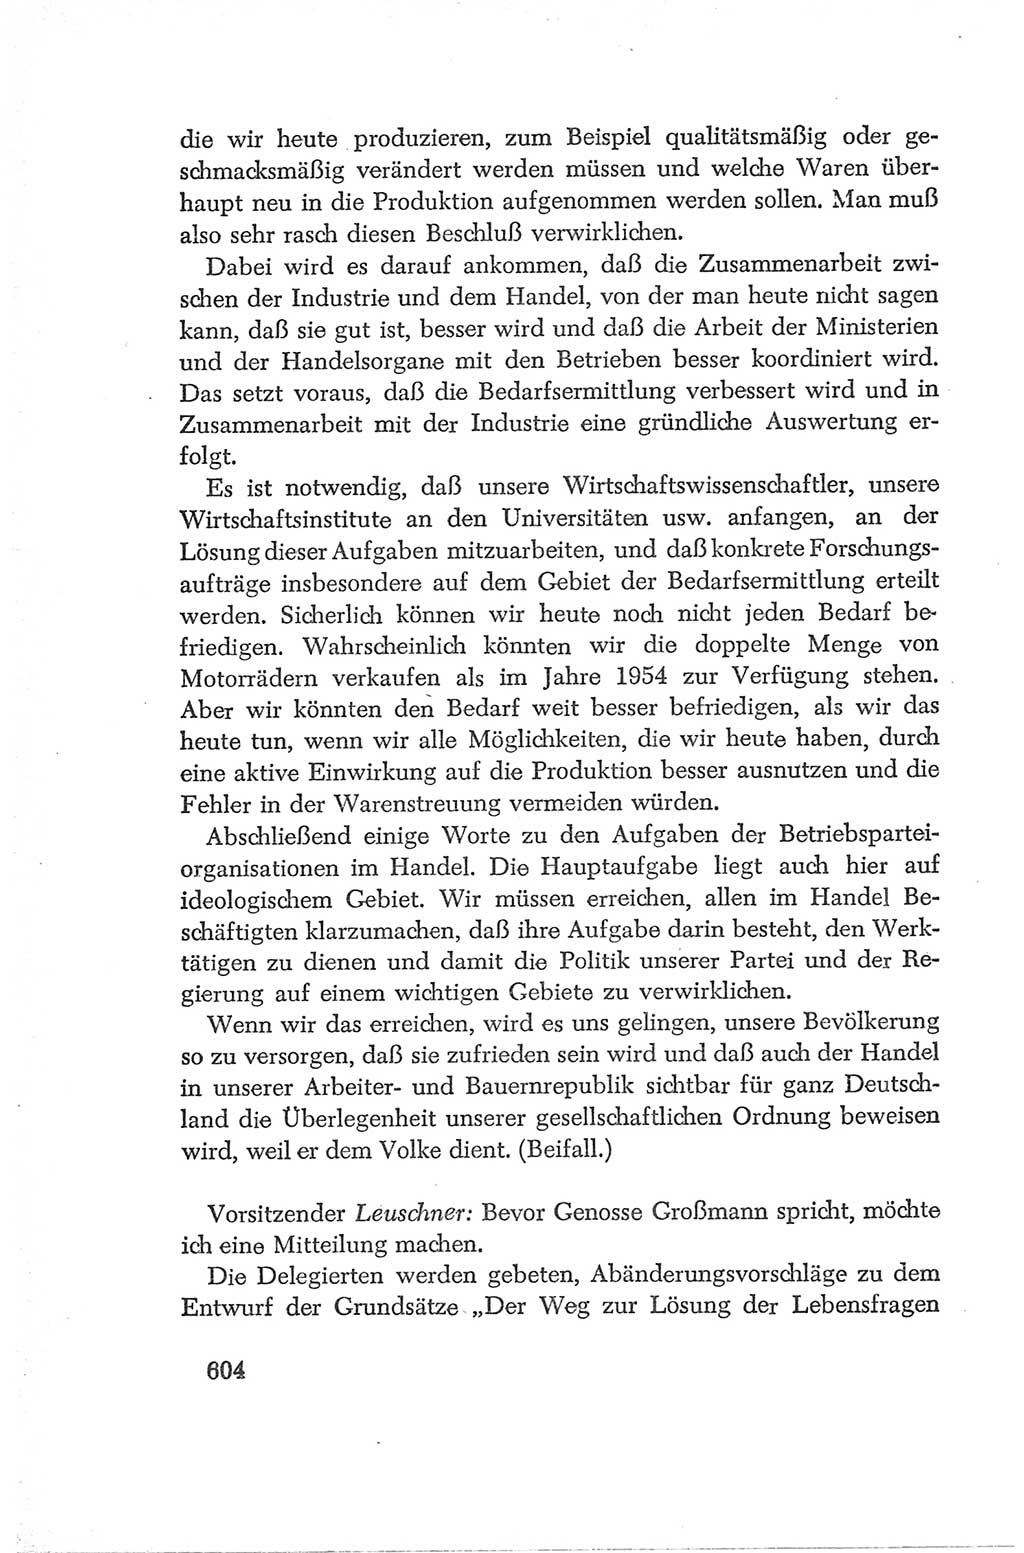 Protokoll der Verhandlungen des Ⅳ. Parteitages der Sozialistischen Einheitspartei Deutschlands (SED) [Deutsche Demokratische Republik (DDR)] 1954, Seite 604